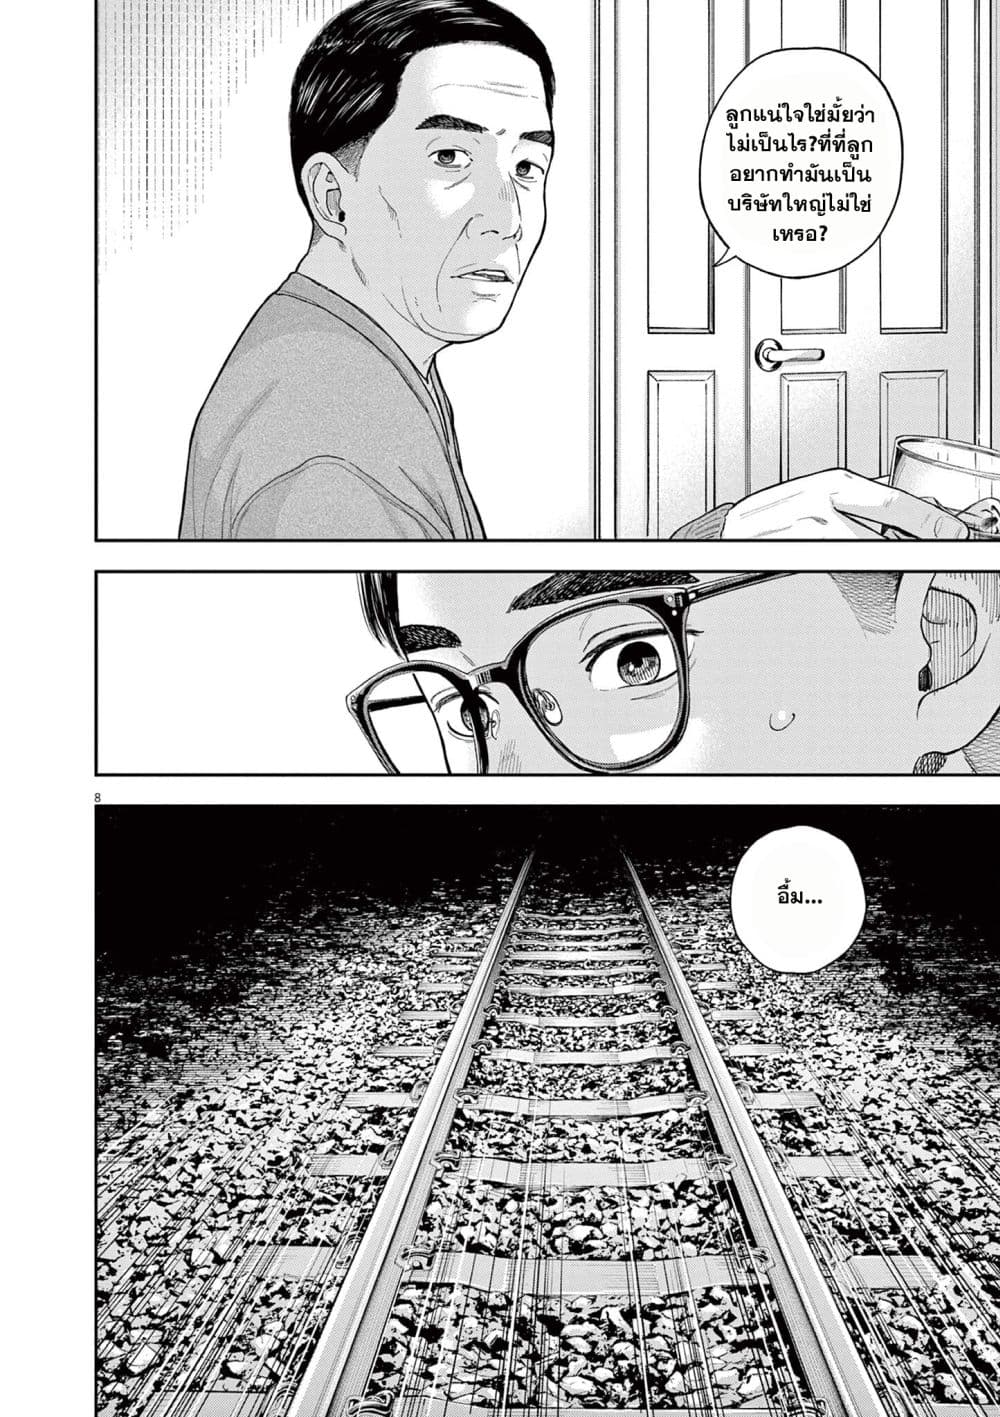 Yumenashi-sensei No Shinroshidou 3-ความปรารถนา คนขับรถไฟ 1